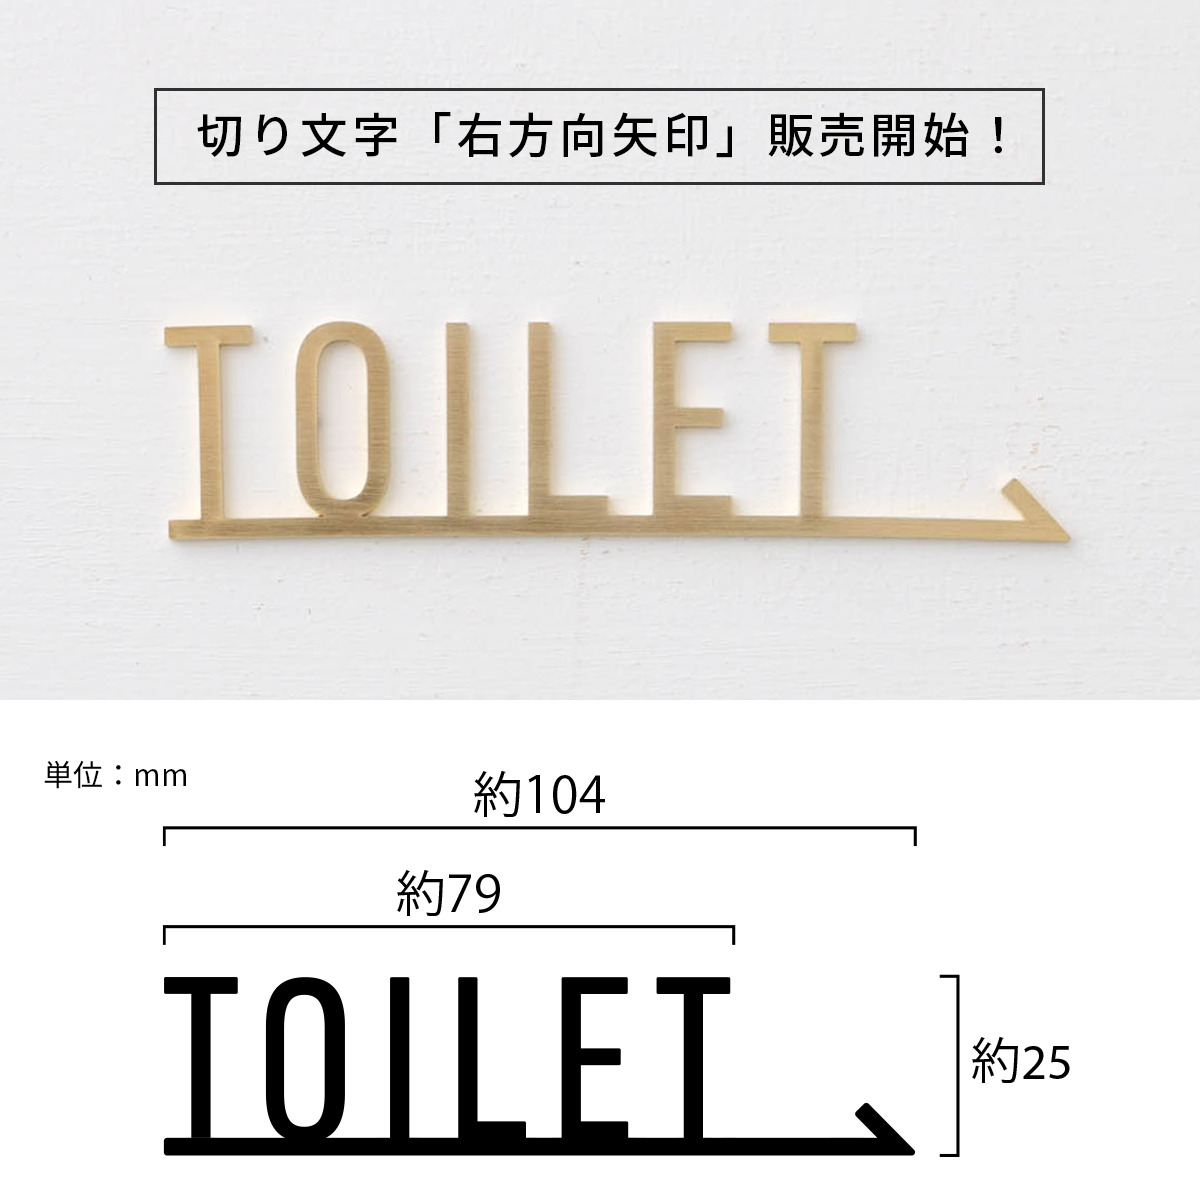 真鍮サイン・ネーム・ドアプレート TOILET TEKKI CRAFT・テッキクラフト